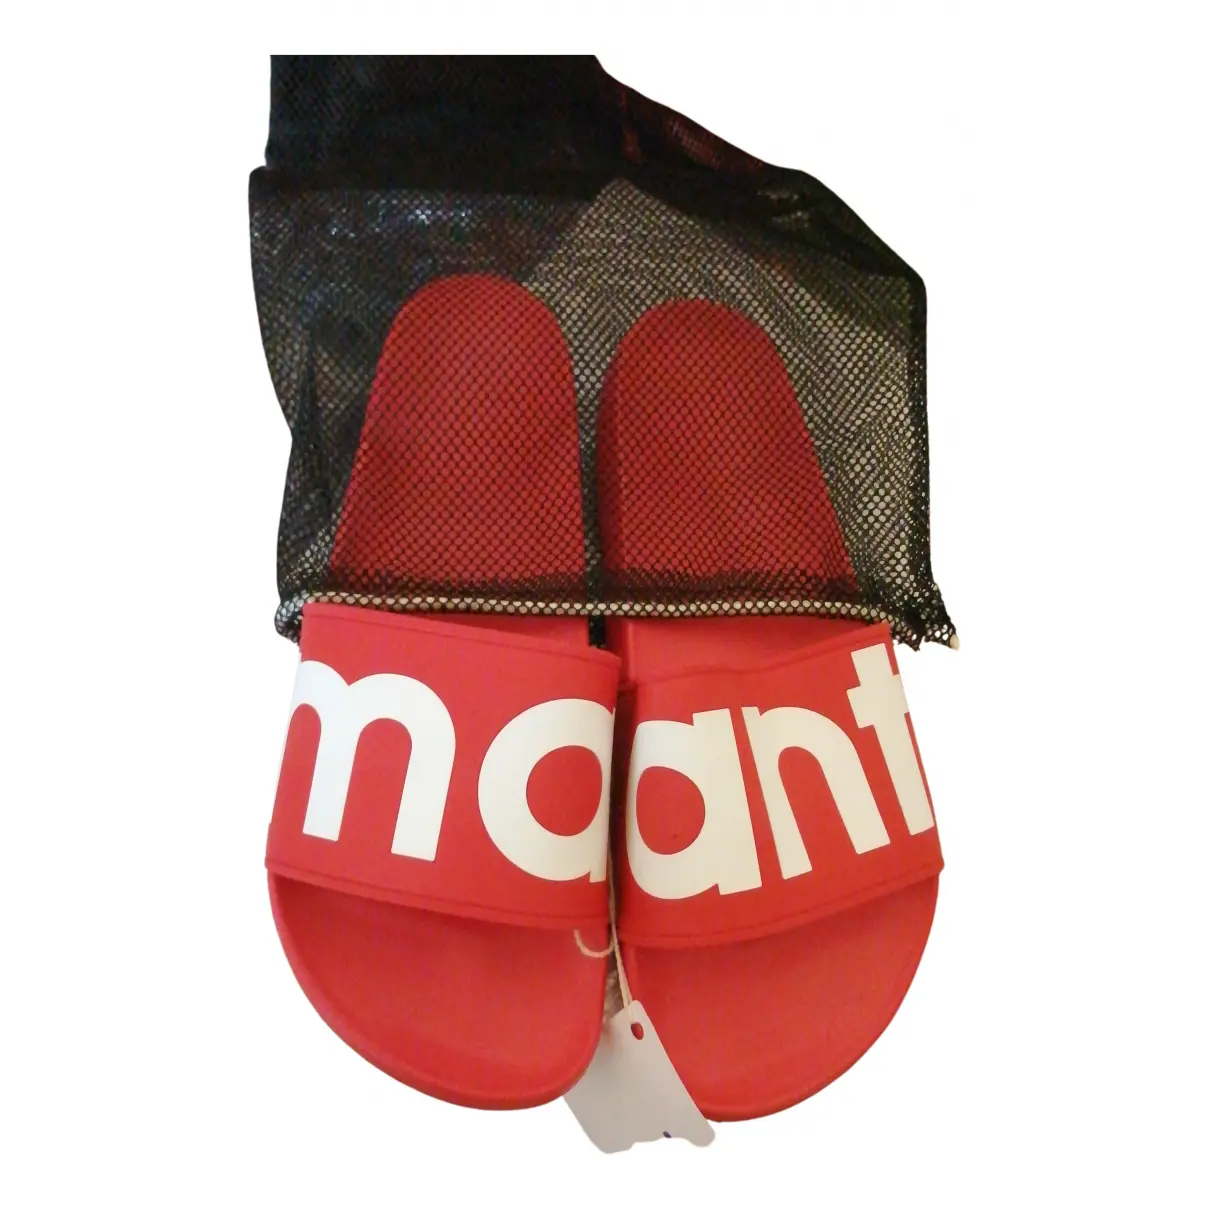 Buy Isabel Marant Sandals online